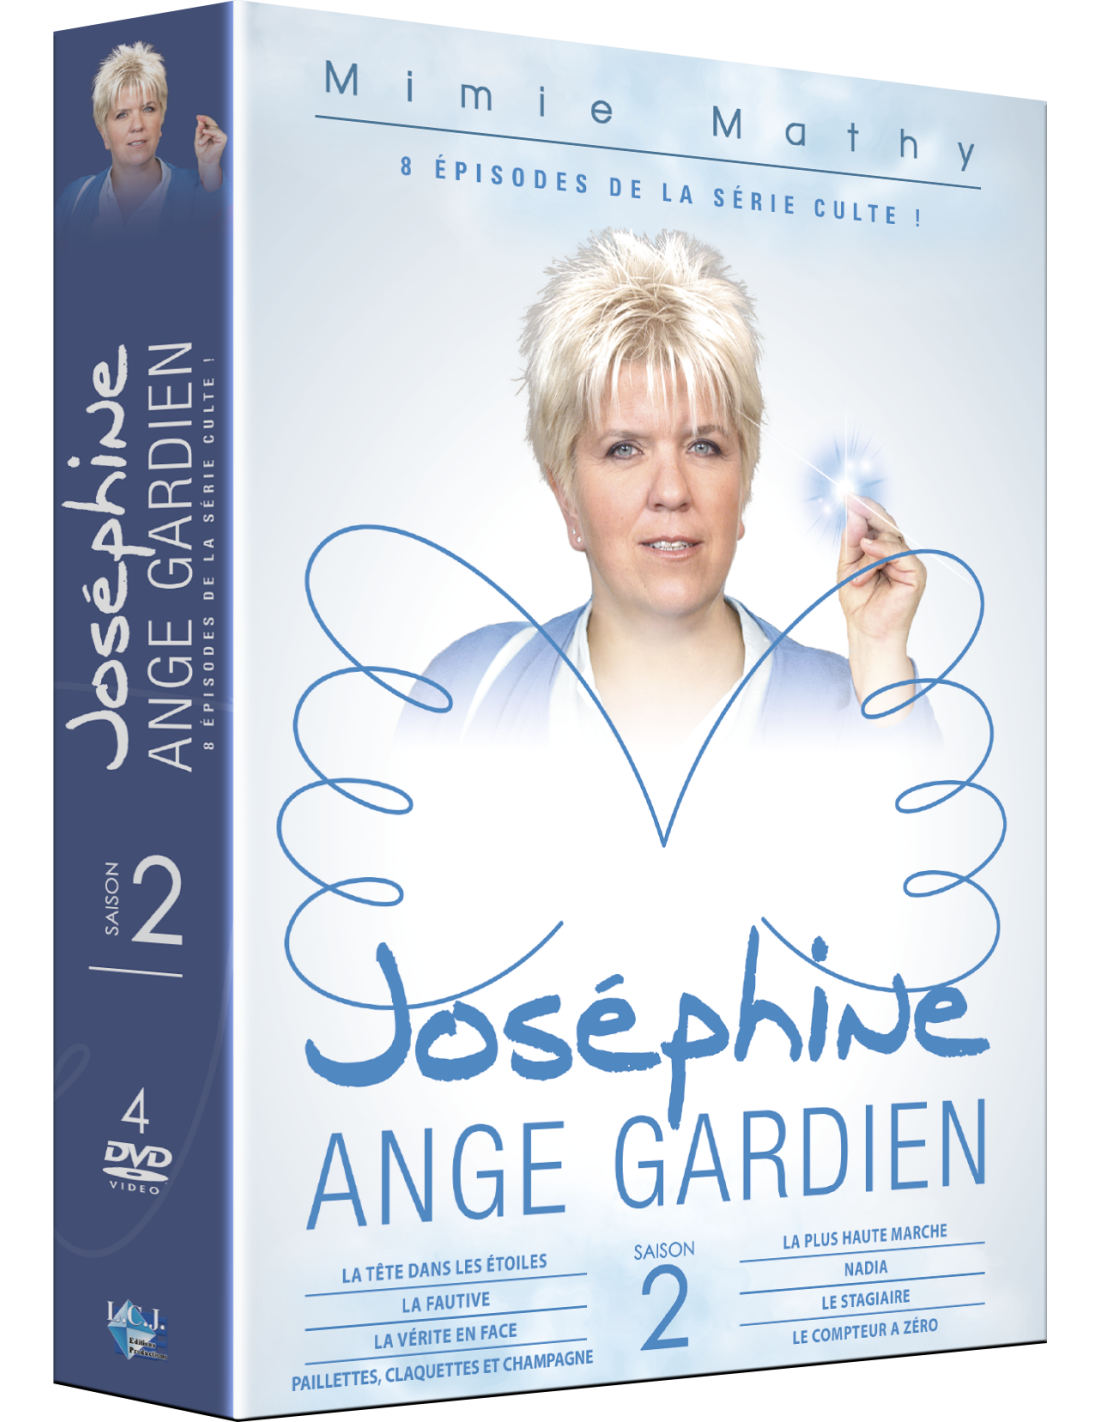 Joséphine, ange gardien (série) : Saisons, Episodes, Acteurs